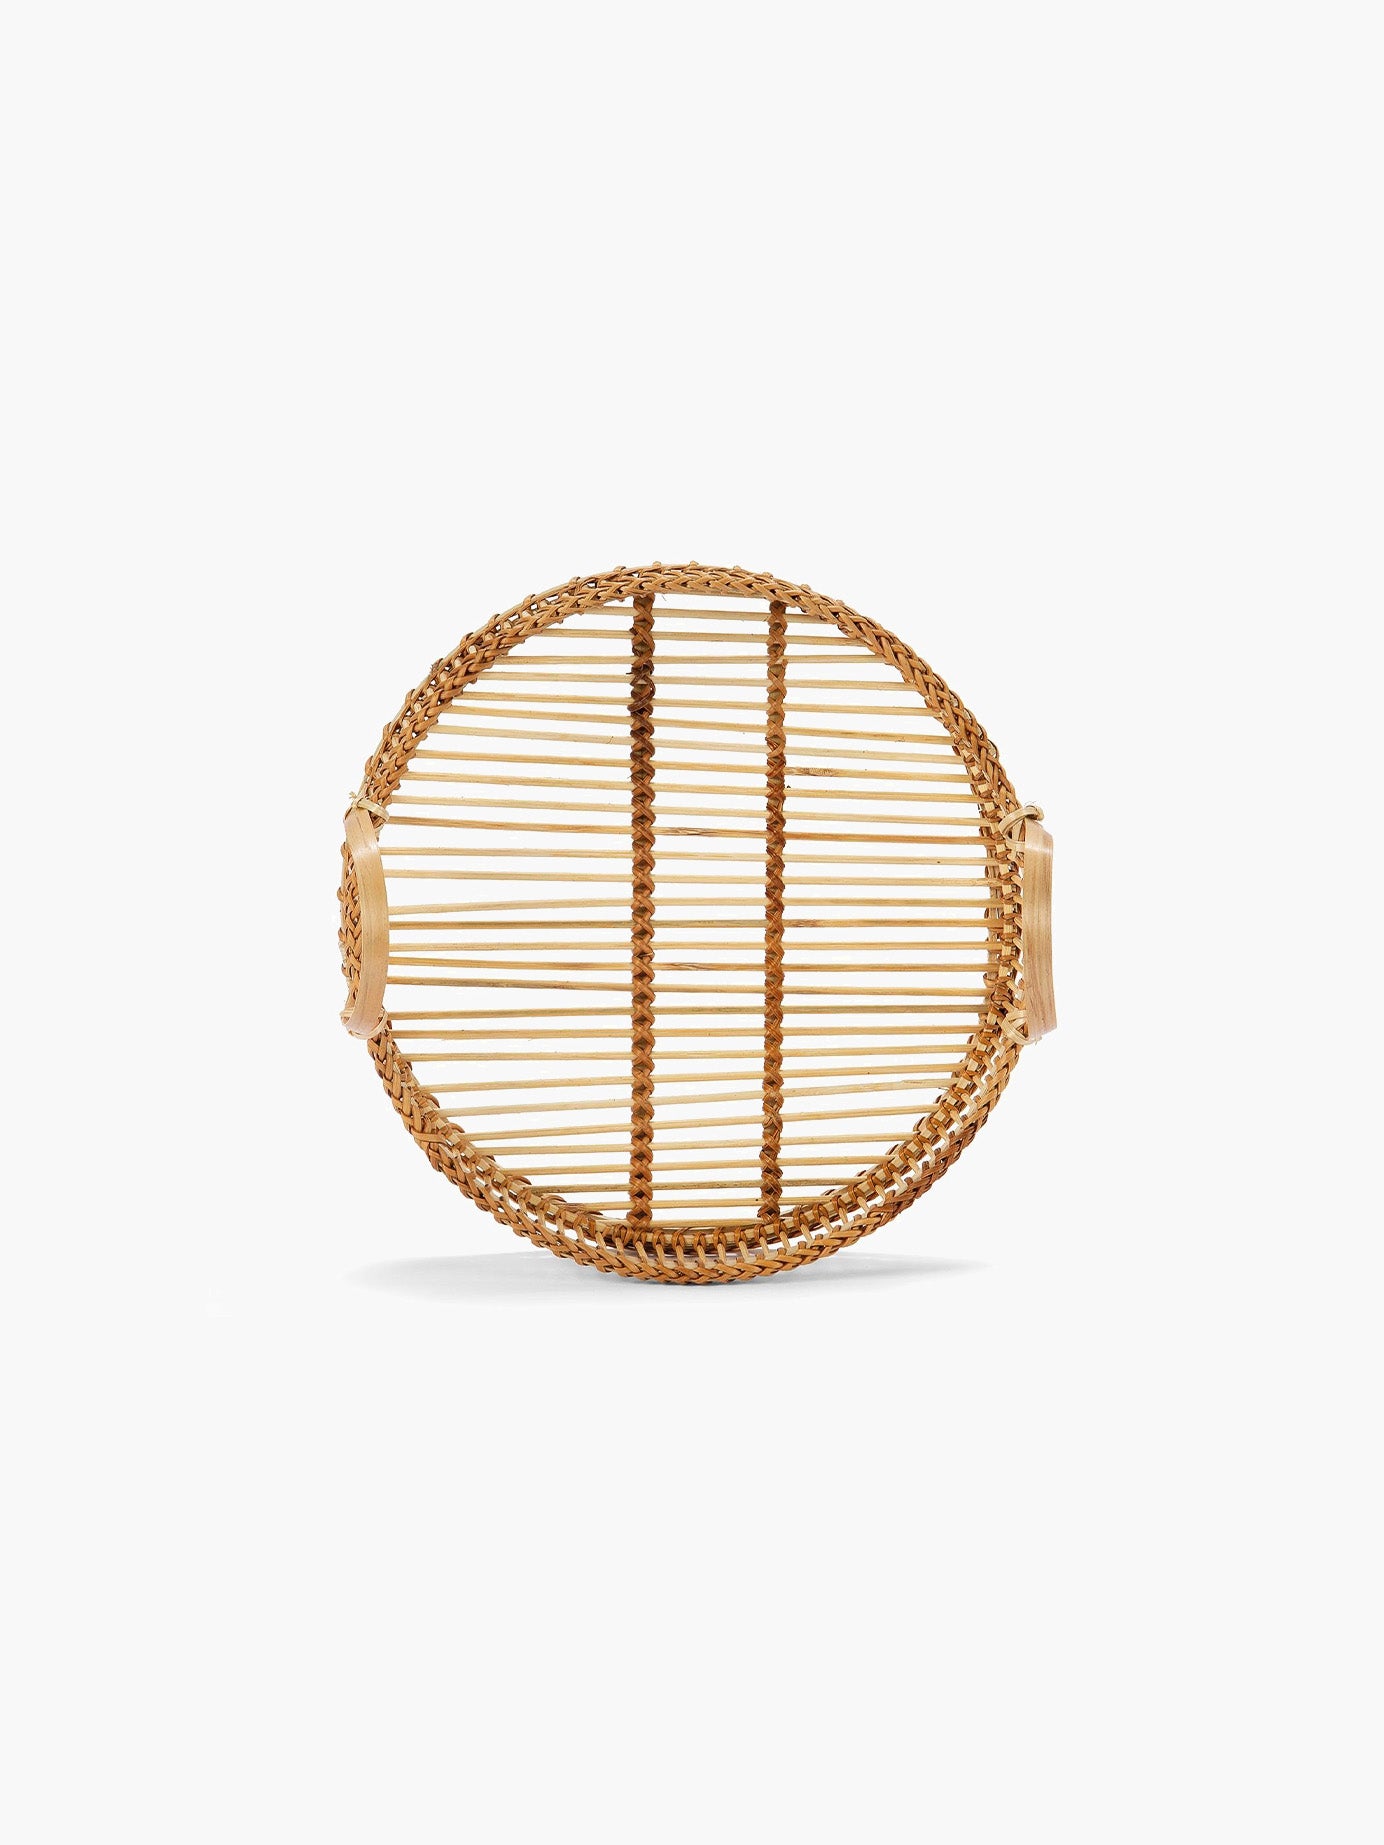 Rundes Tablett aus braunem Bambus - groß